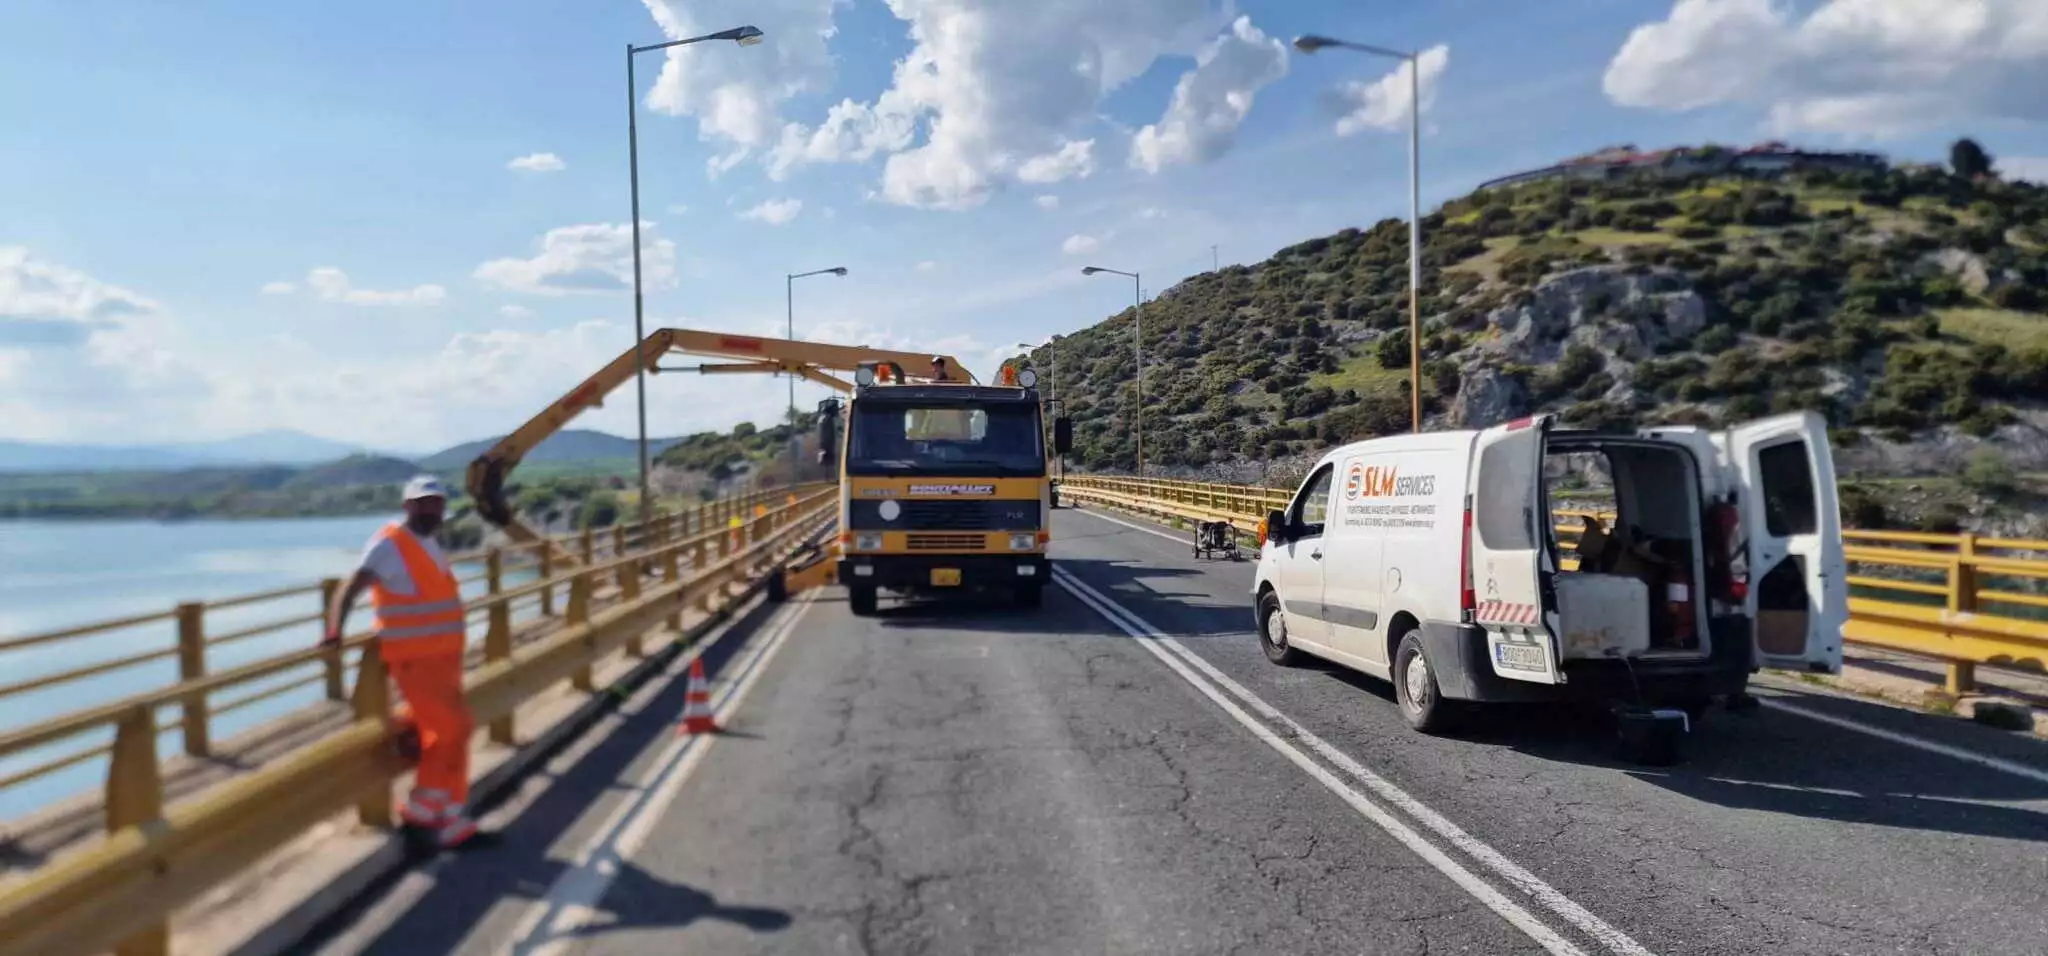 Κοζάνη: Με επιτυχία η δεύτερη φάση εργασιών στην Υψηλή Γέφυρα Σερβίων